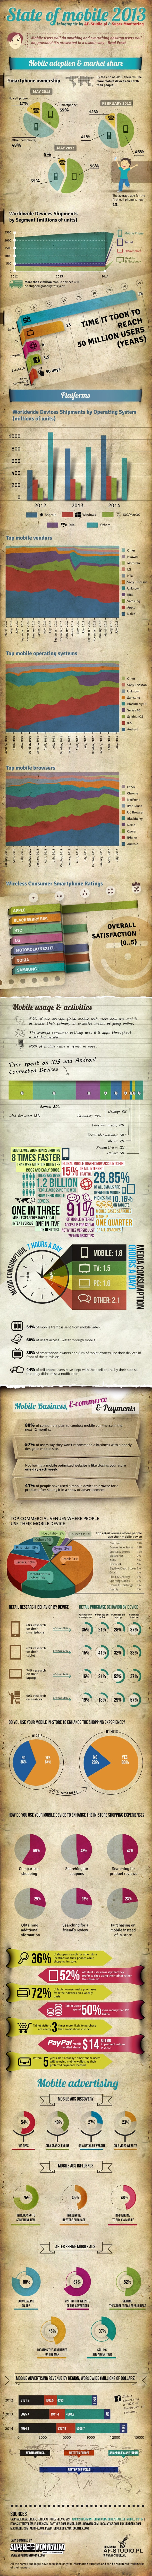 Como anda o mercado mundial mobile? confira o infográfico 1